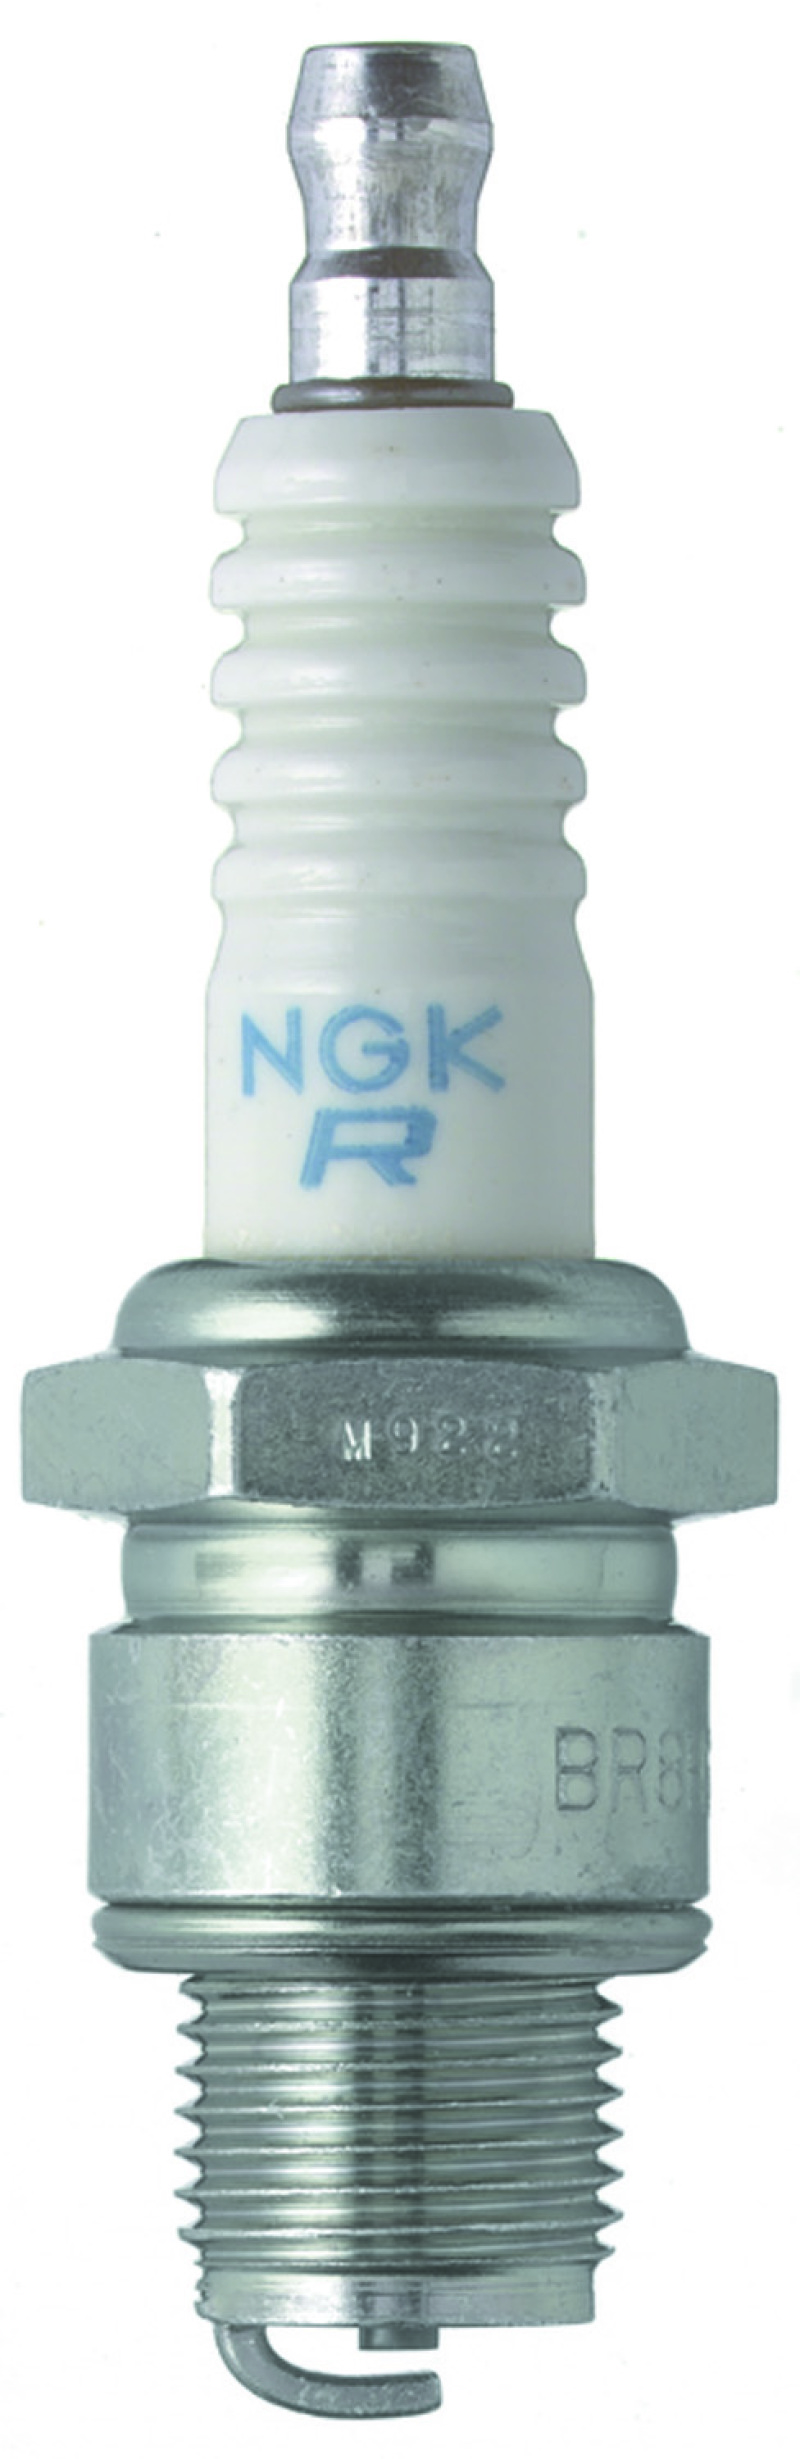 NGK Standard Spark Plug Box of 10 (BR5HS) - 3722